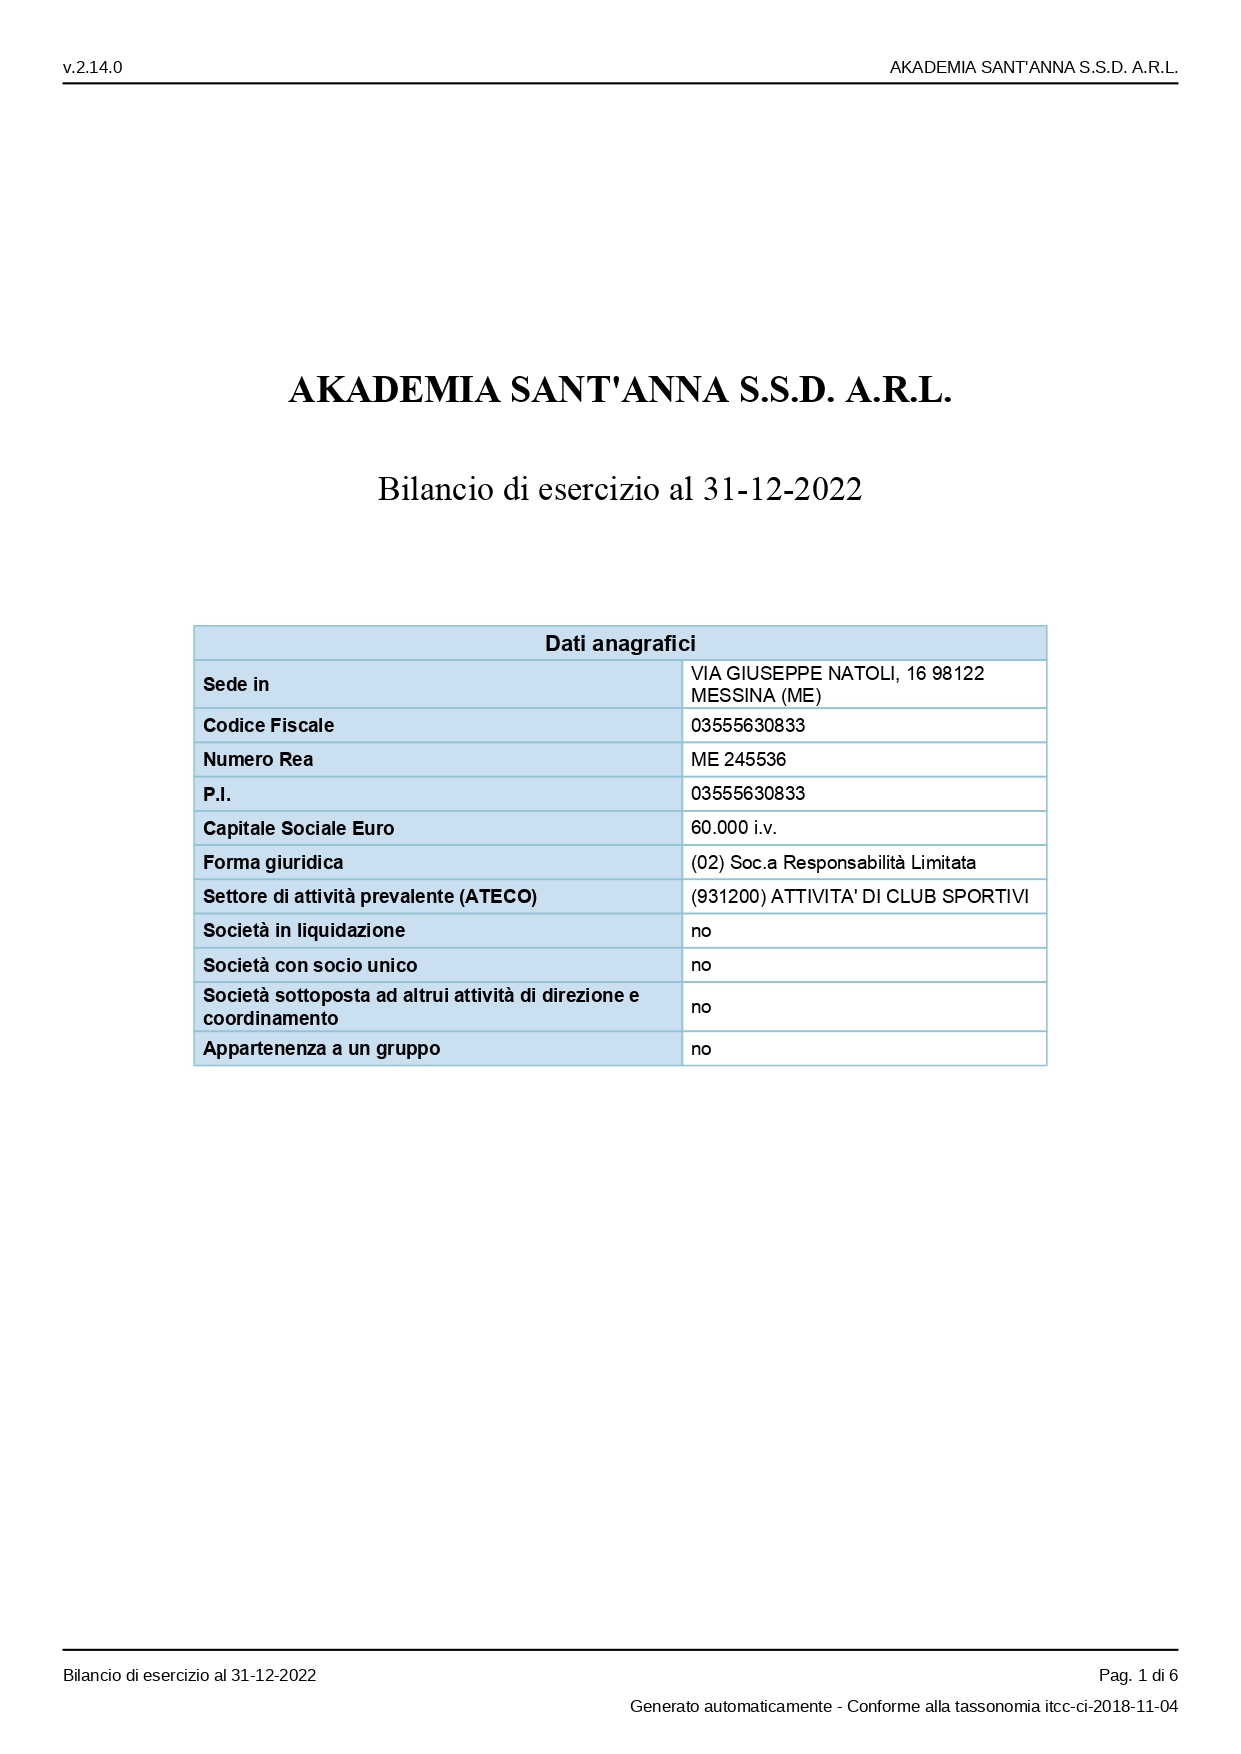 Bilancio Akademia al 31.12.2022_page-0001